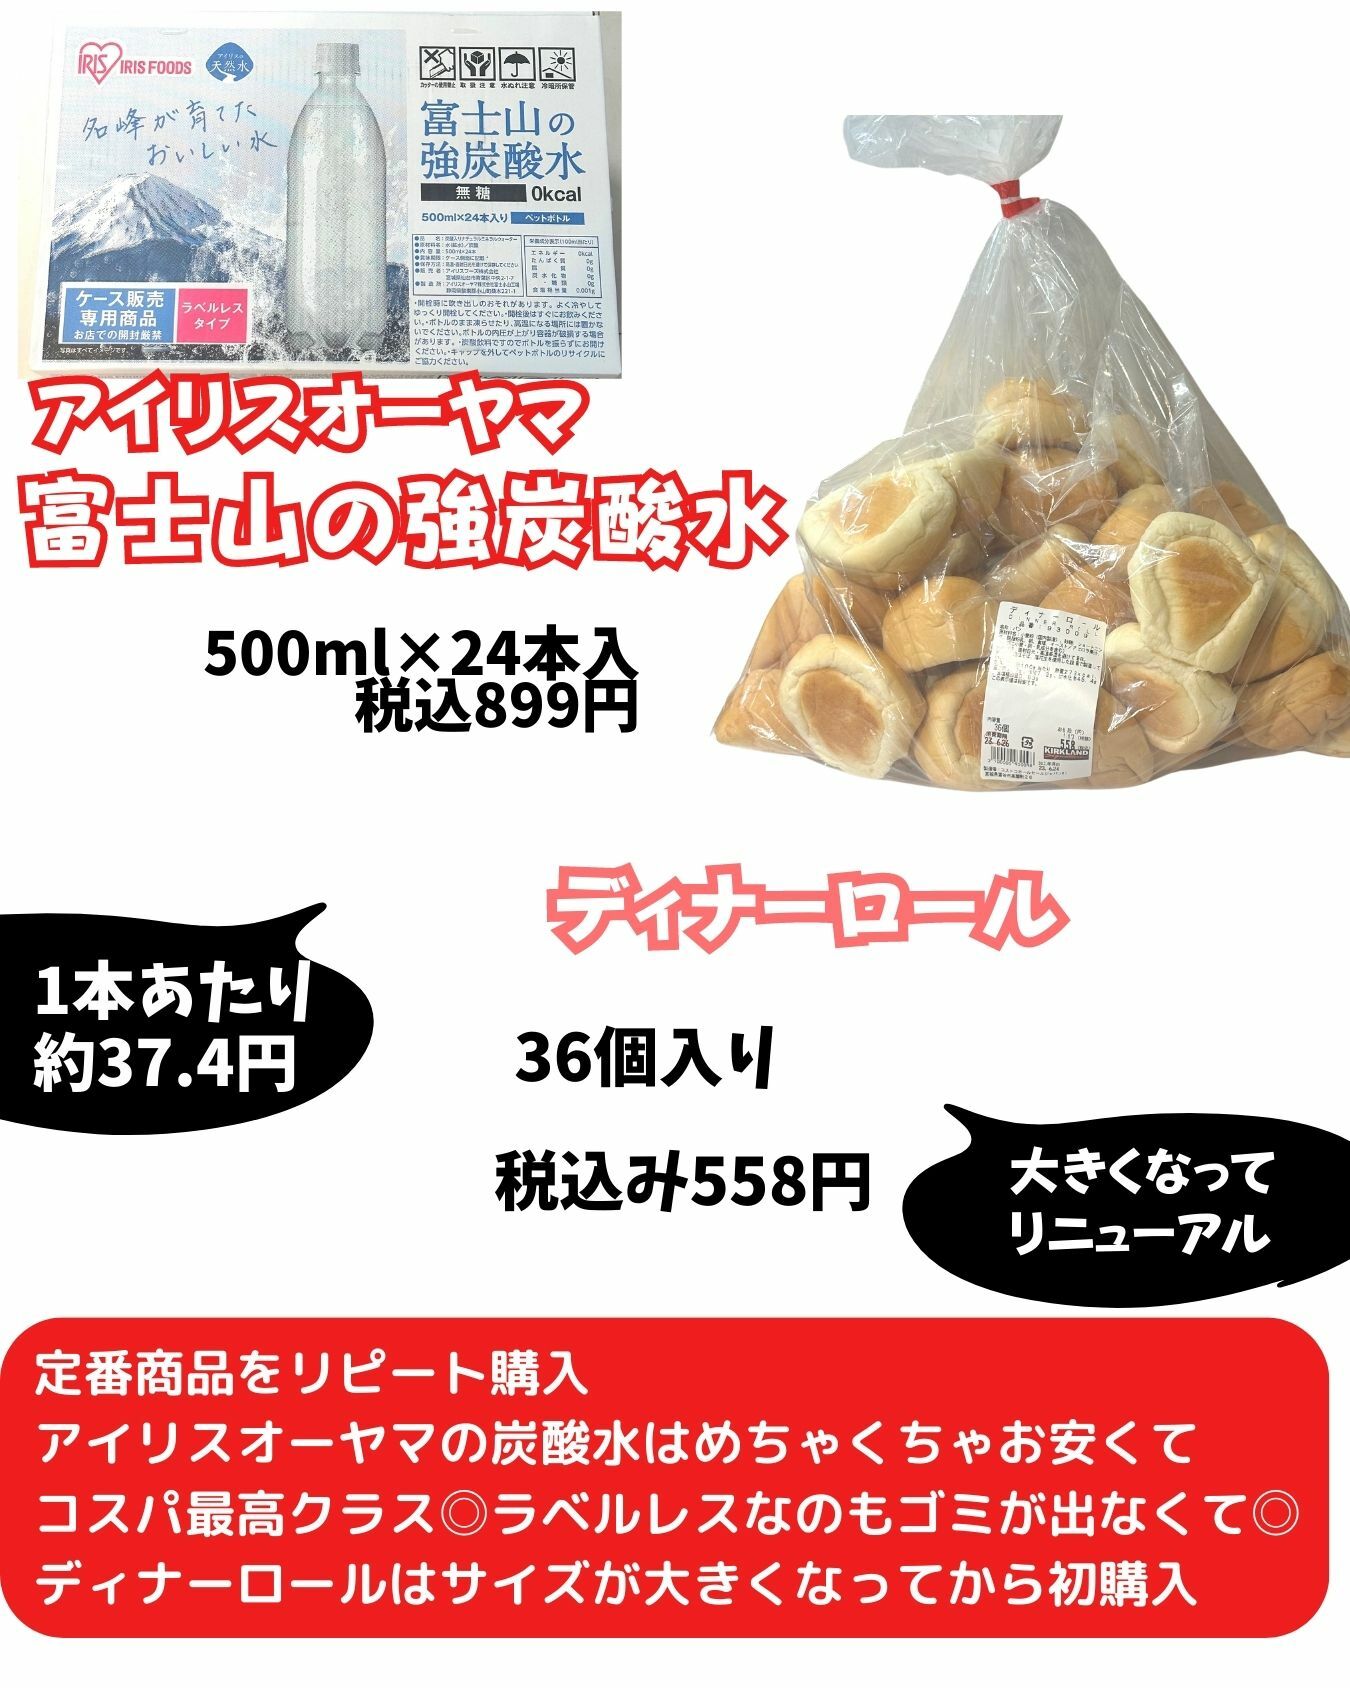 【コストコ】アイリスオーヤマ富士山の強炭酸水/ディナーロール